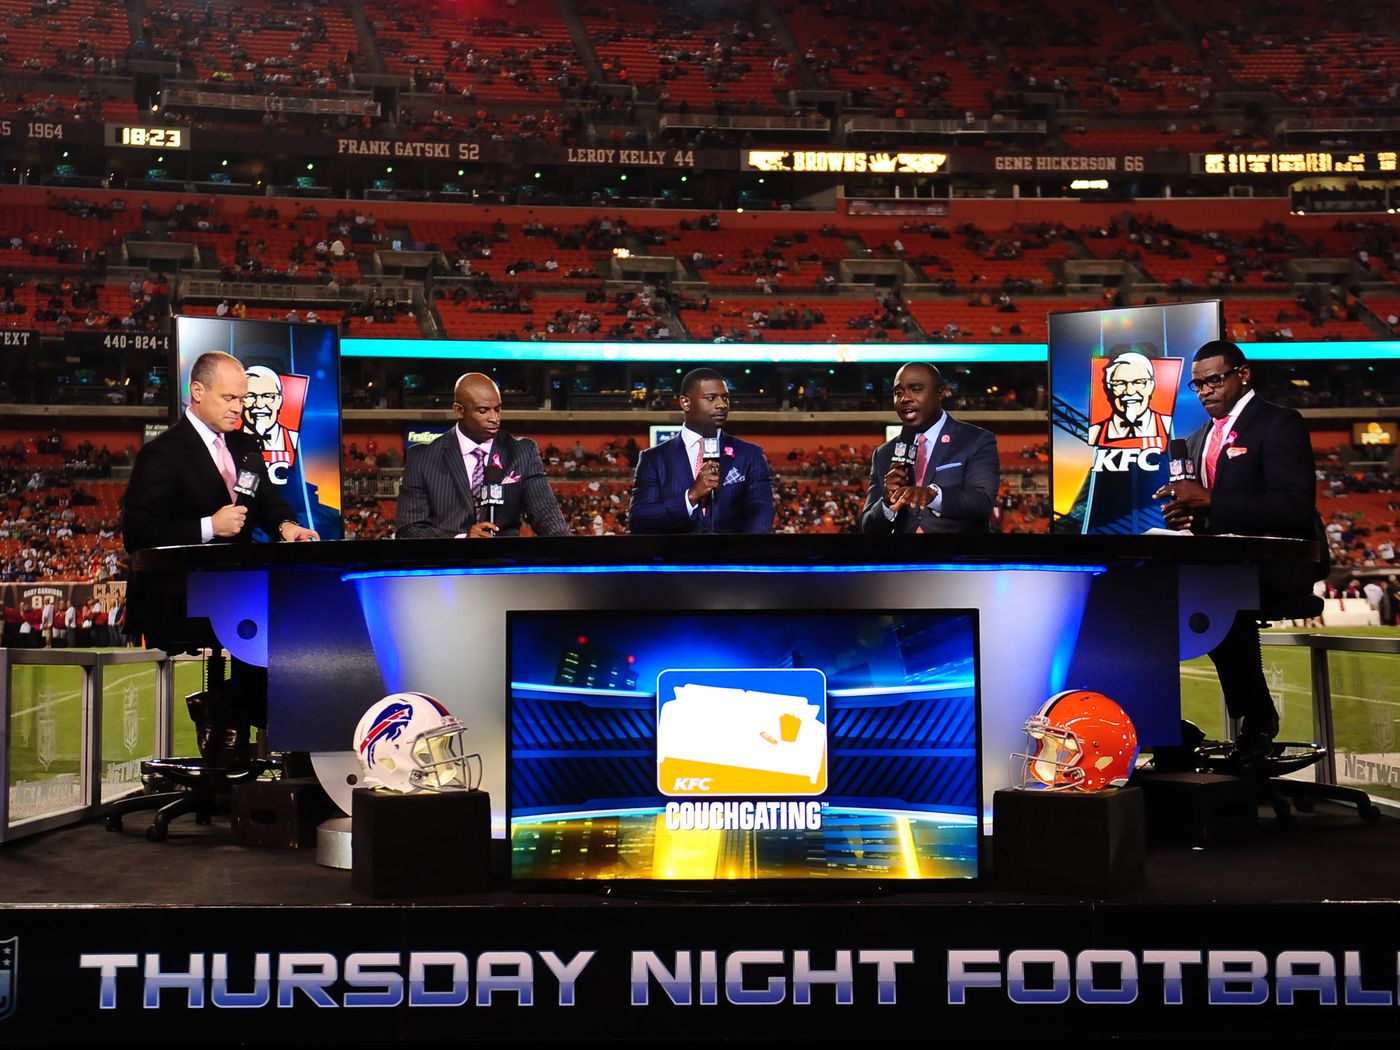 thursday night football television